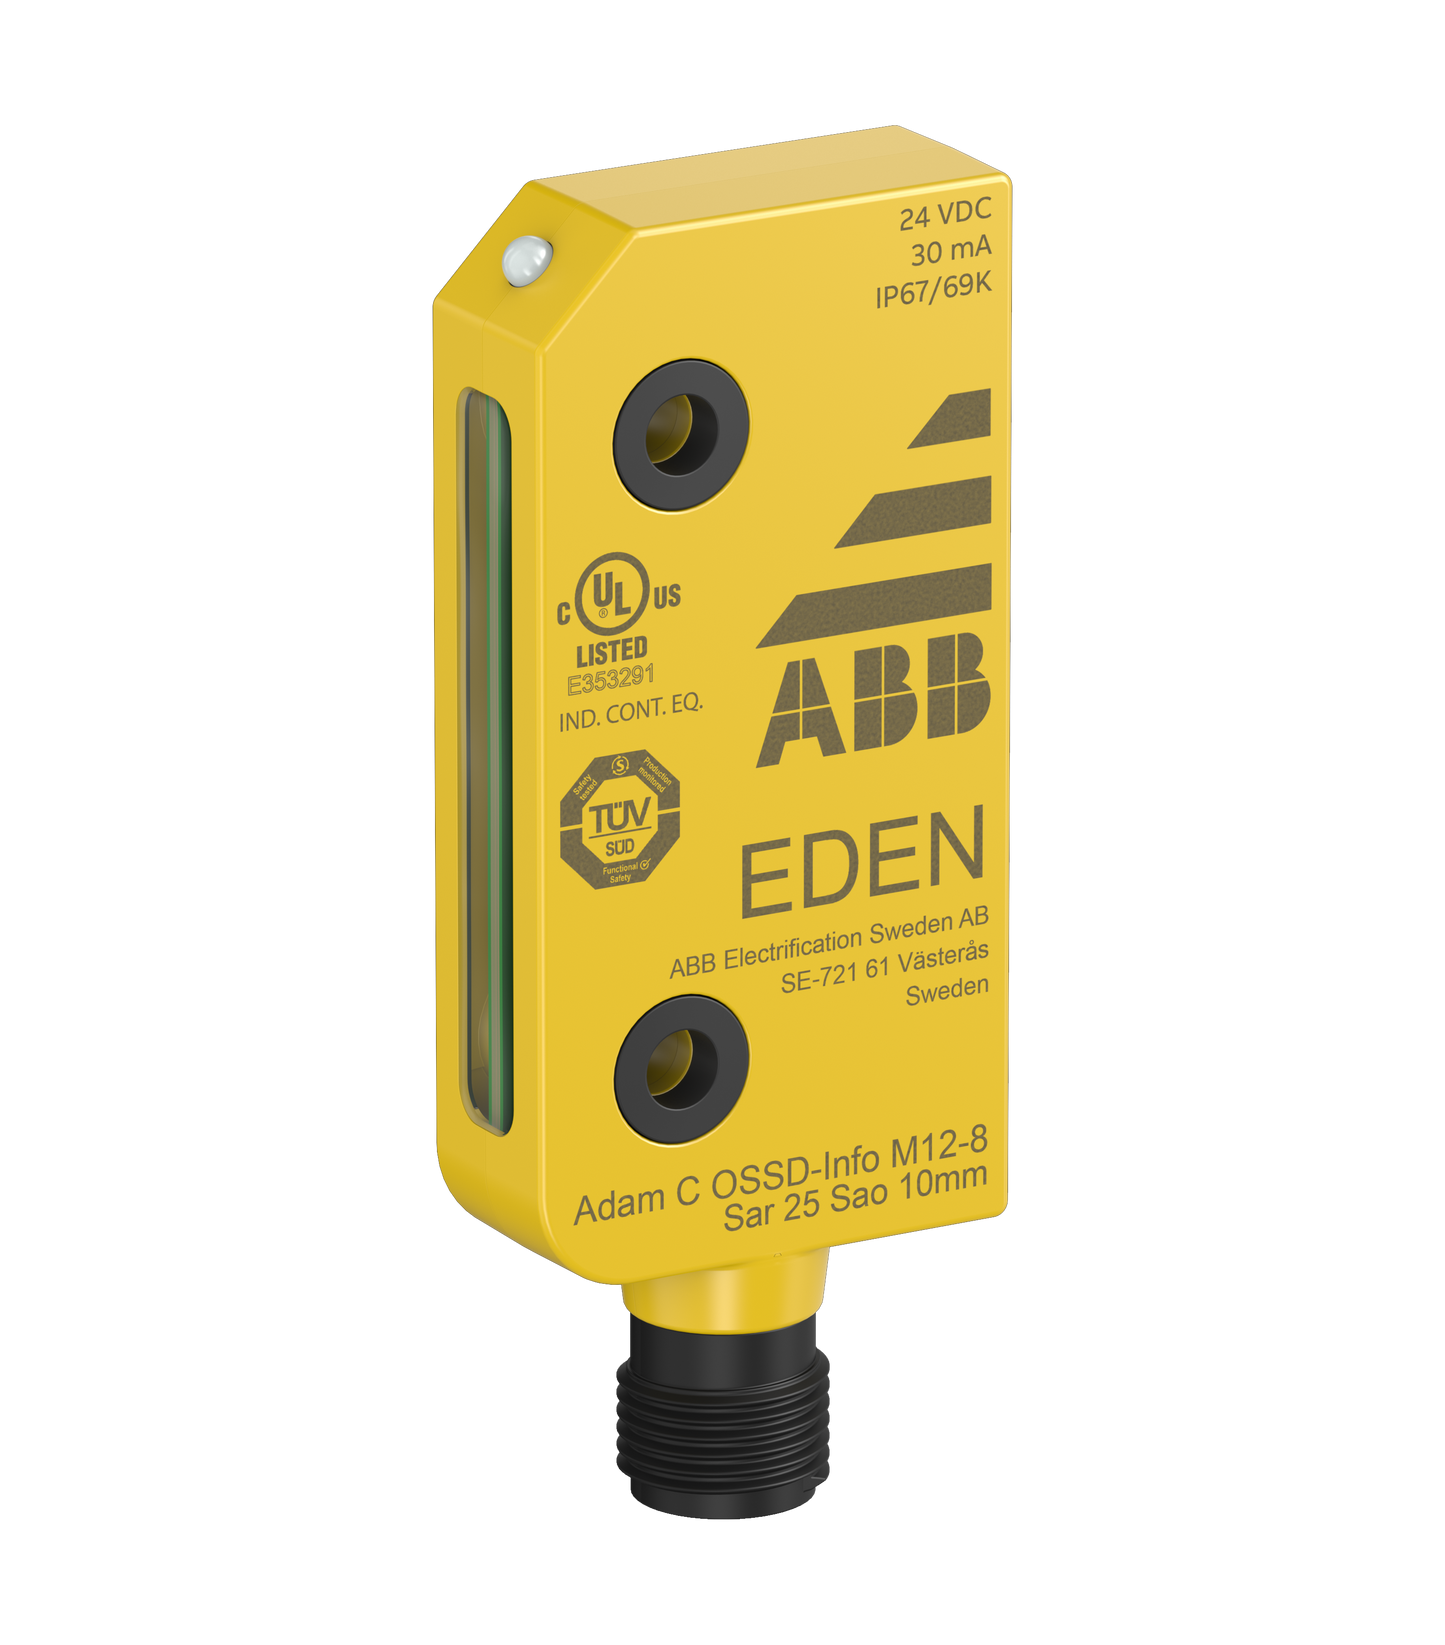 ABB Adam C OSSD-Info M12-8 Sensor